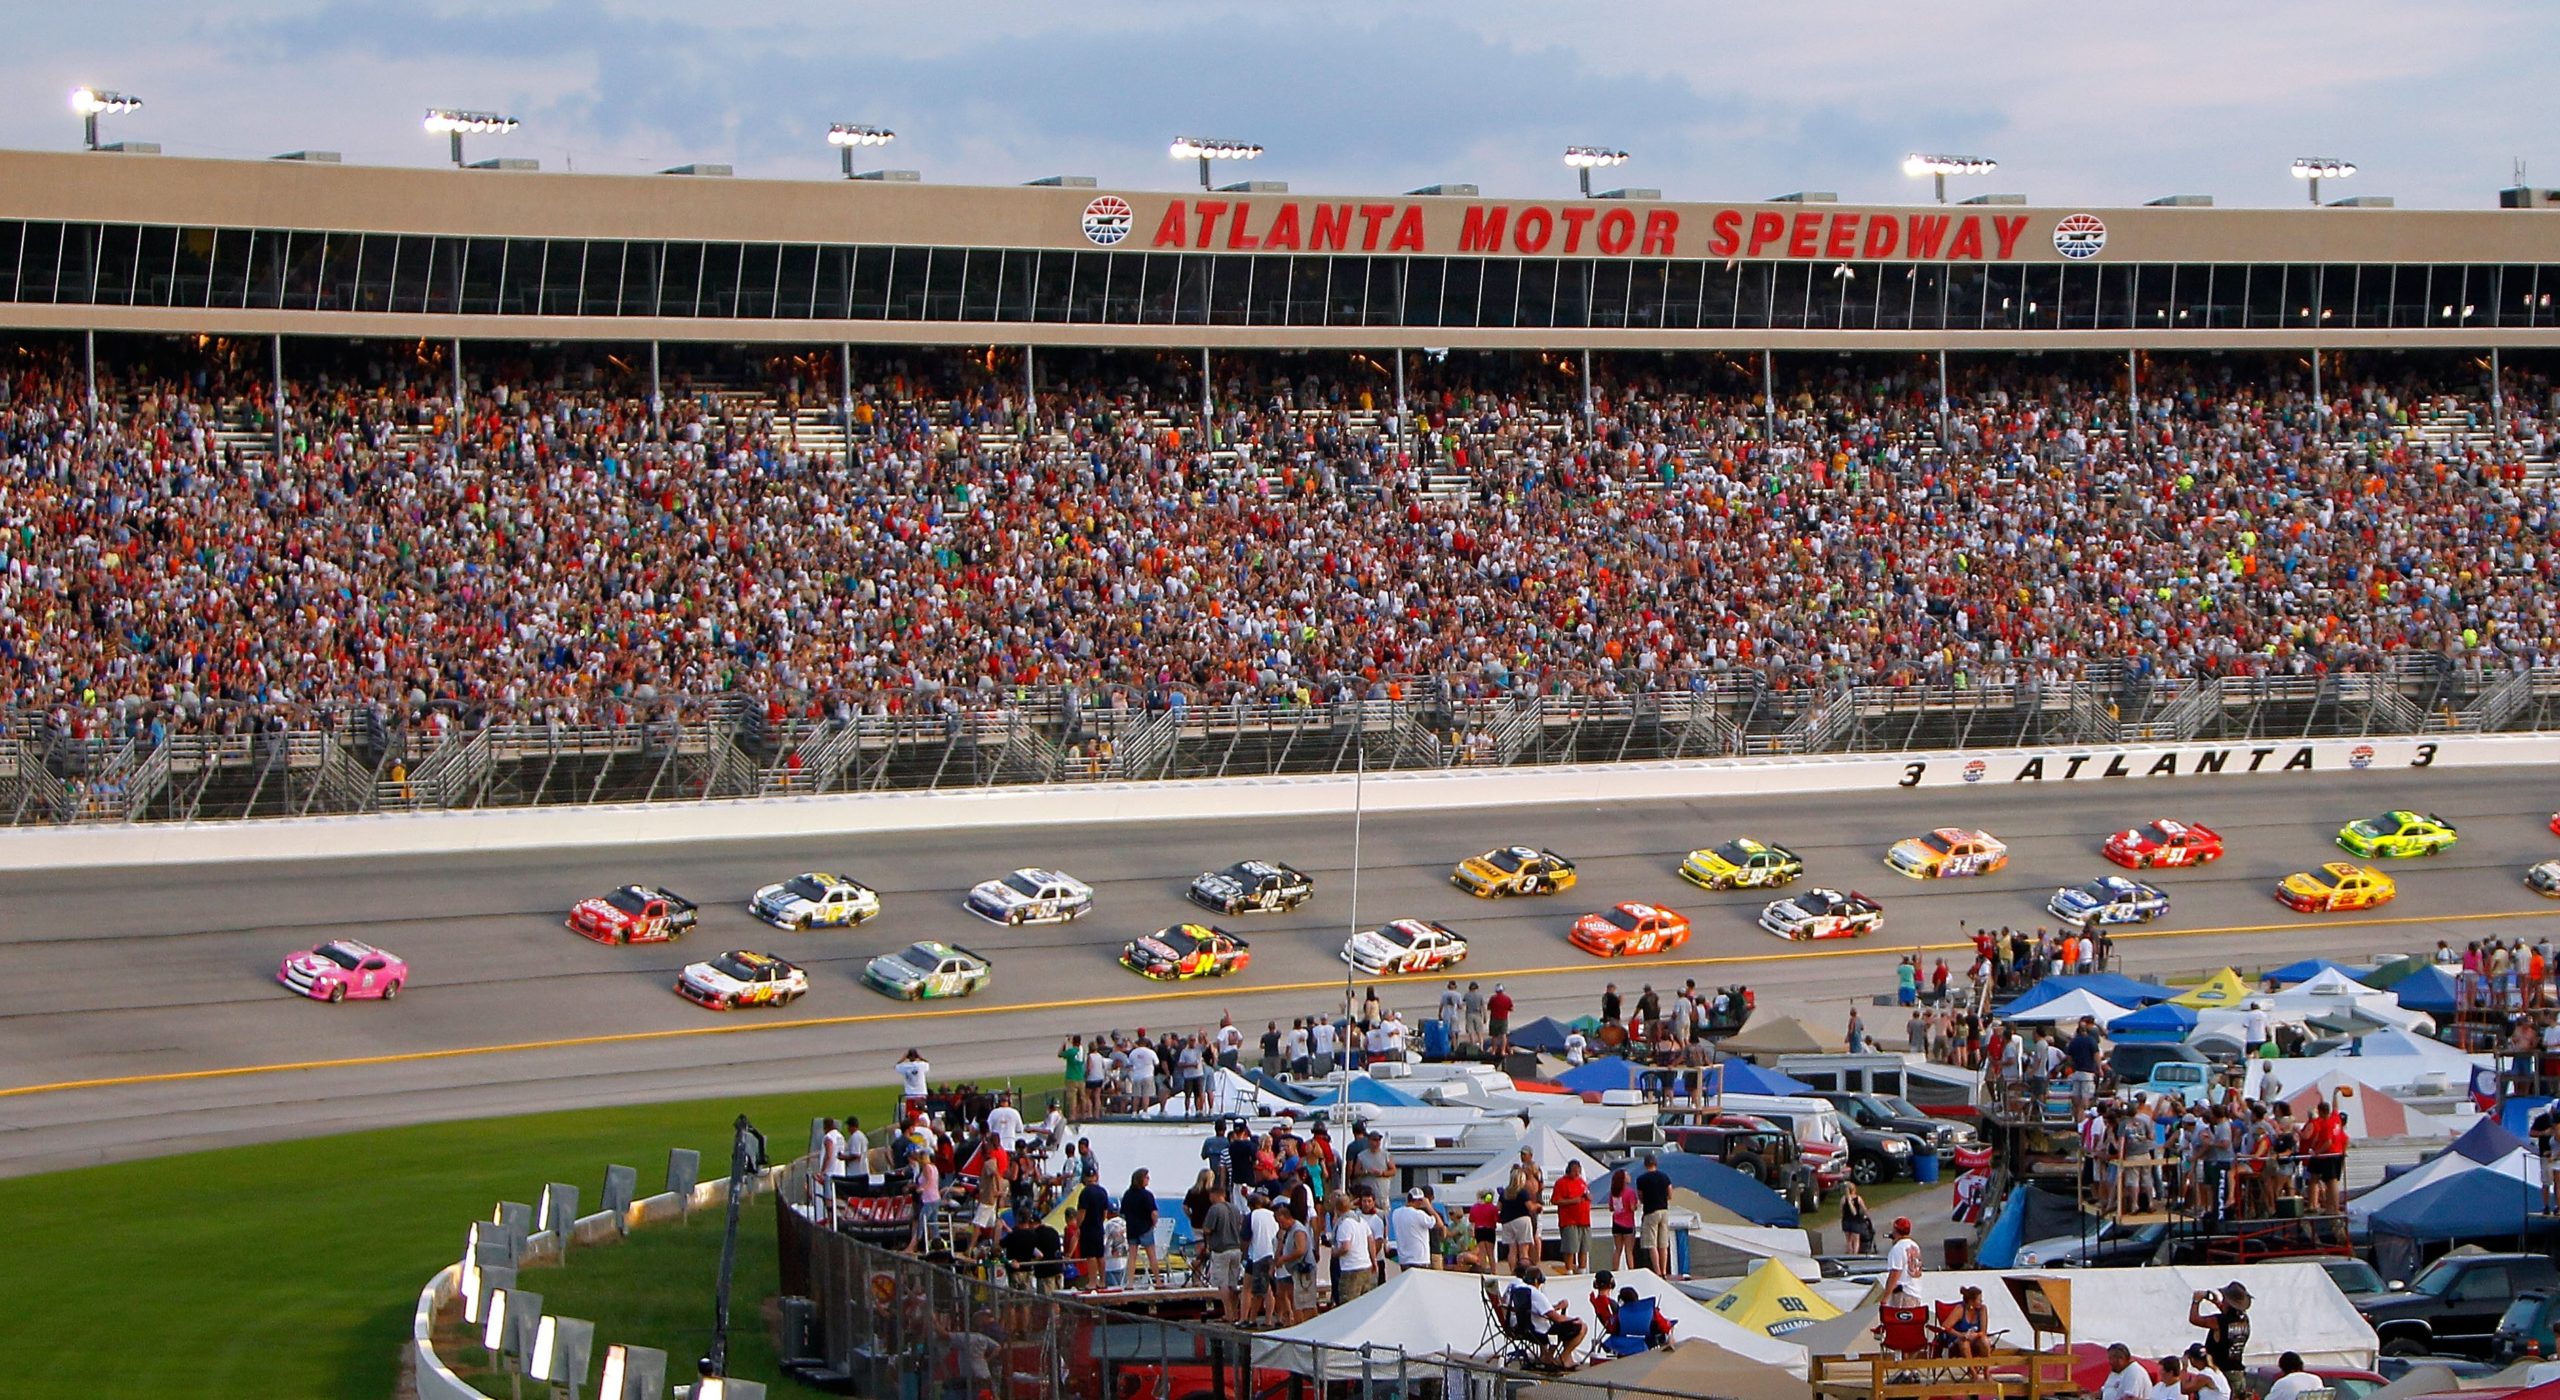 Atlanta Motor Speedway Overview, Stats and Weekend Racing Schedule